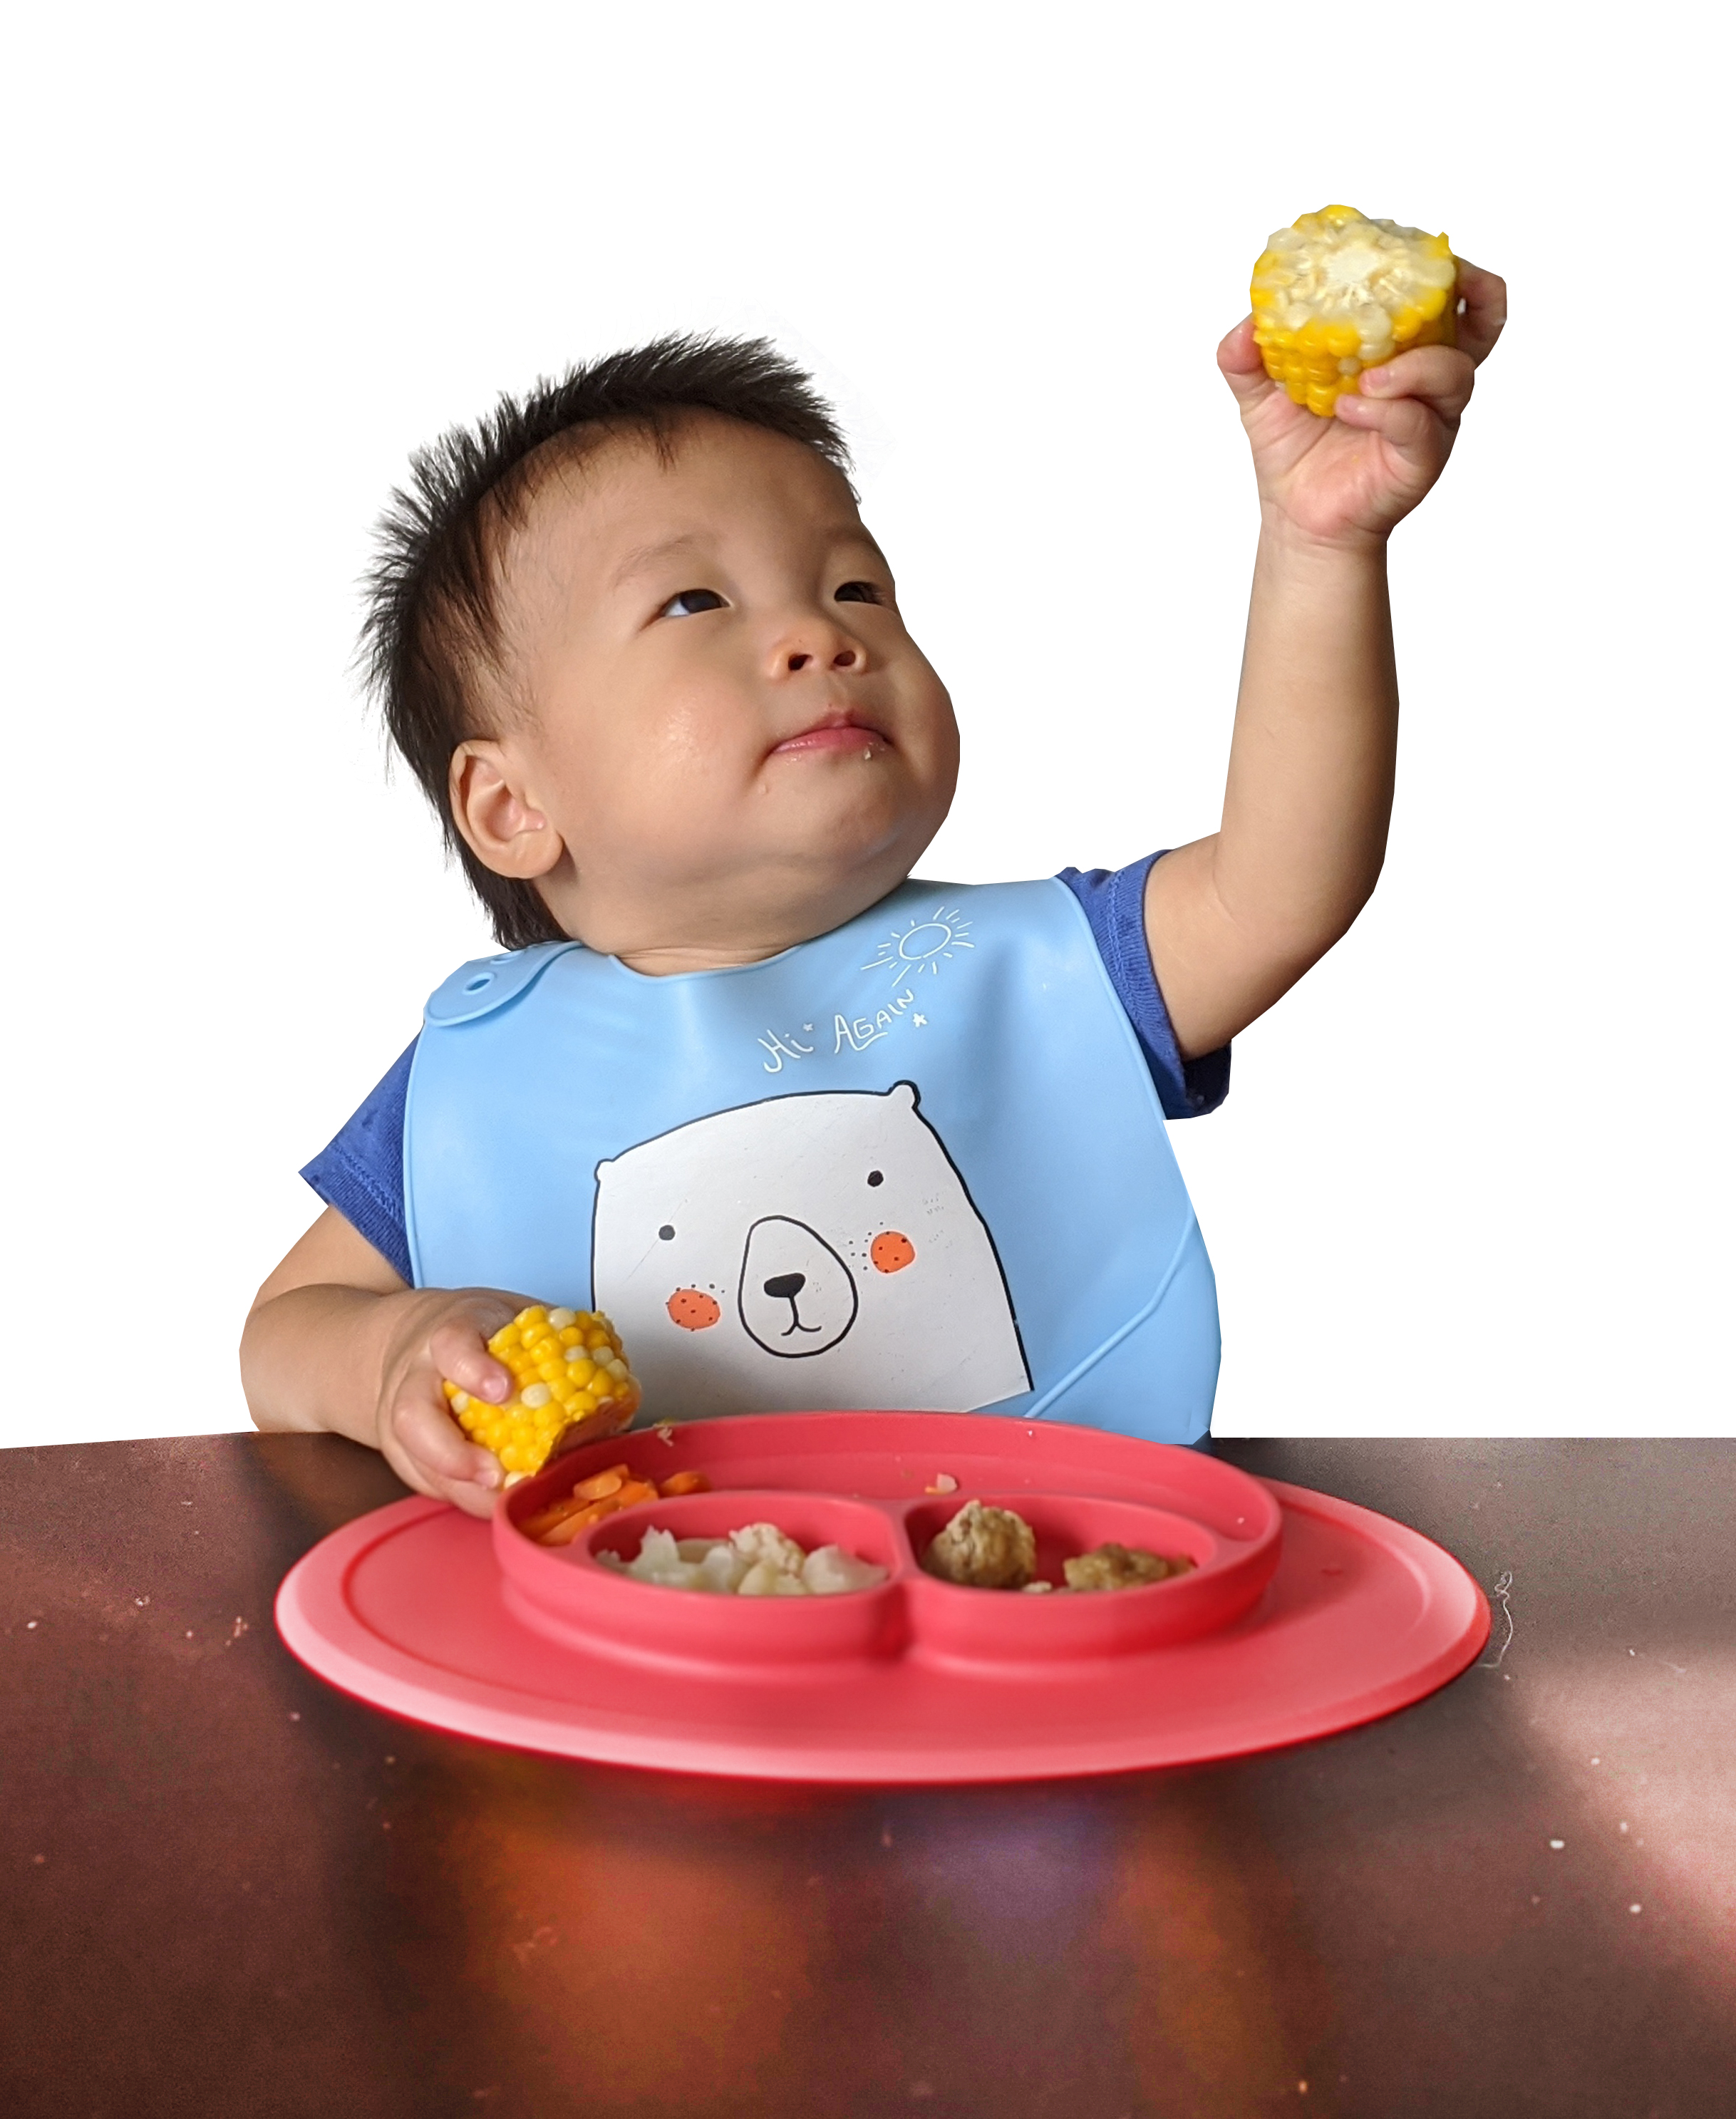 Infant & Toddler Feeding Table